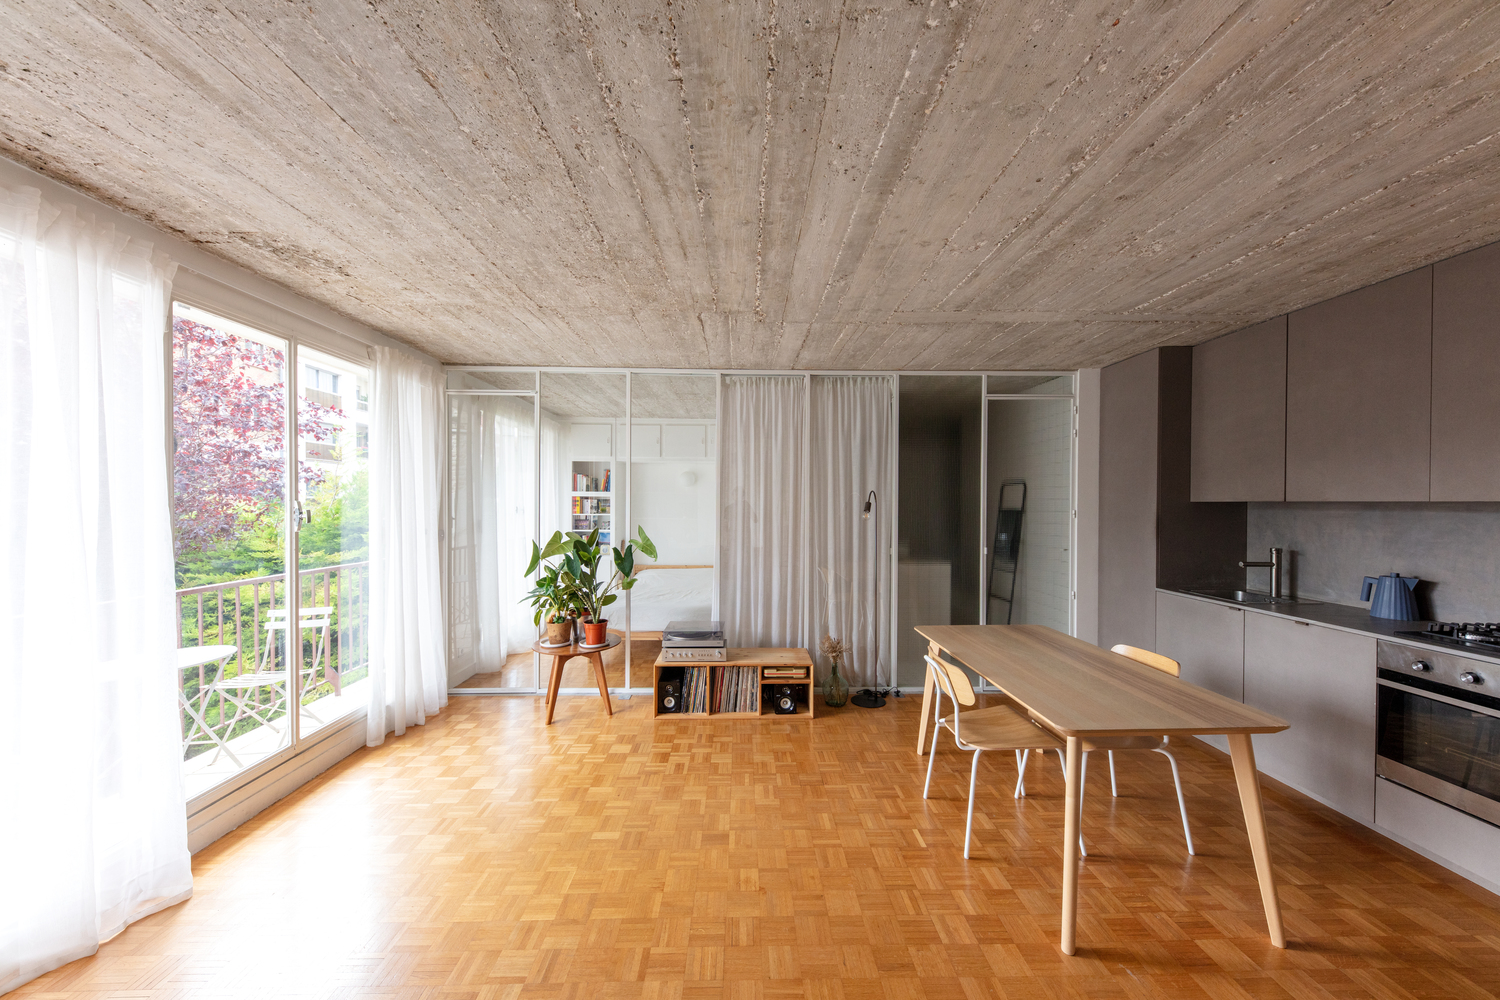 hình ảnh khu vực bếp nấu và phòng ăn trong căn hộ 42m2 với hệ tủ màu ghi xám, trần ốp gỗ cùng tông, sàn gỗ, cửa kính lớn